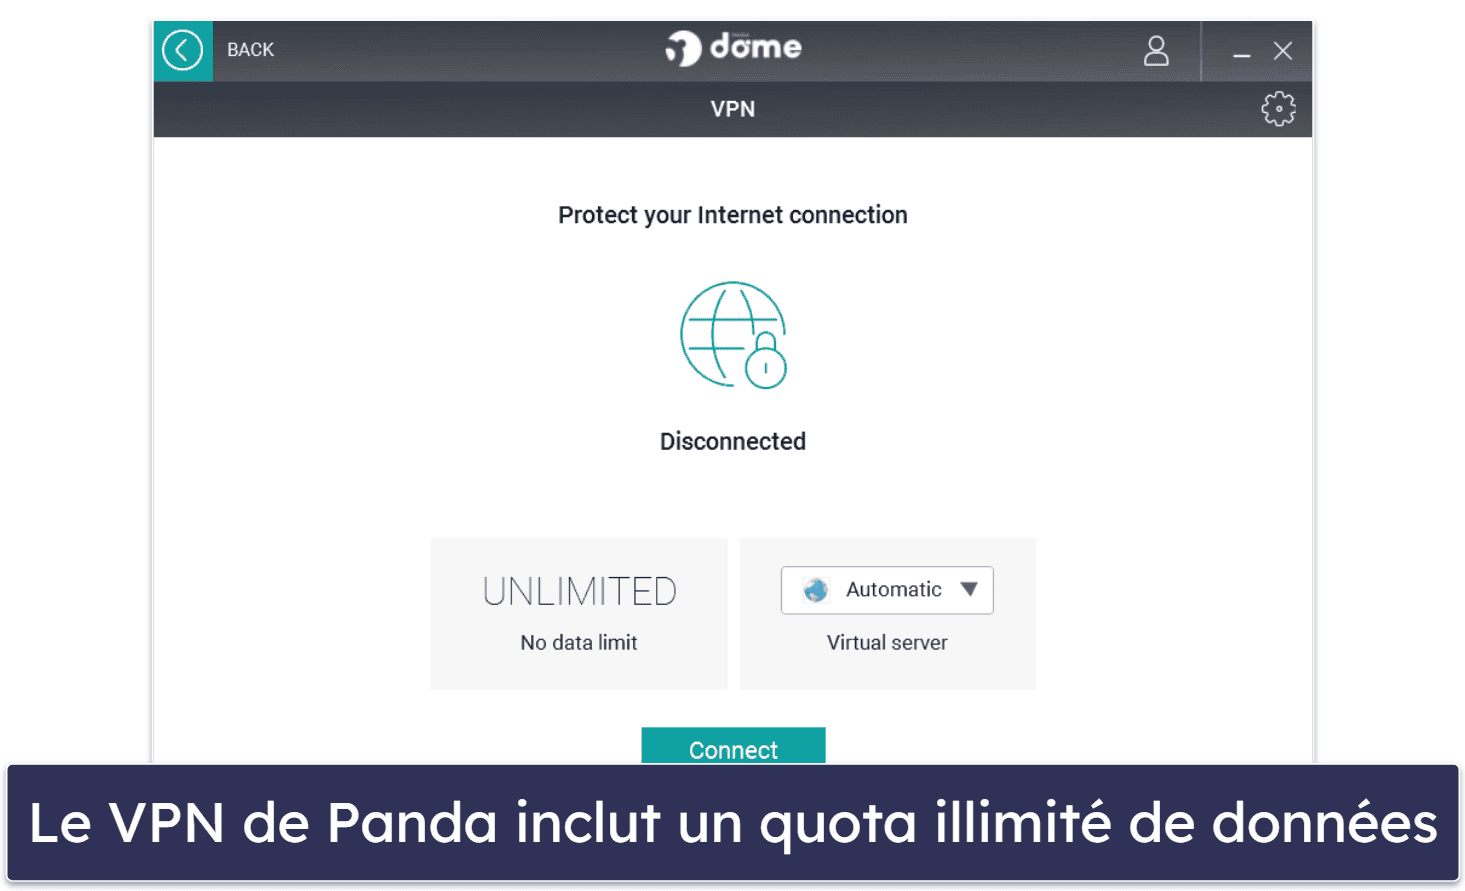 9. Panda Dome : formules tarifaires souples et VPN intuitif